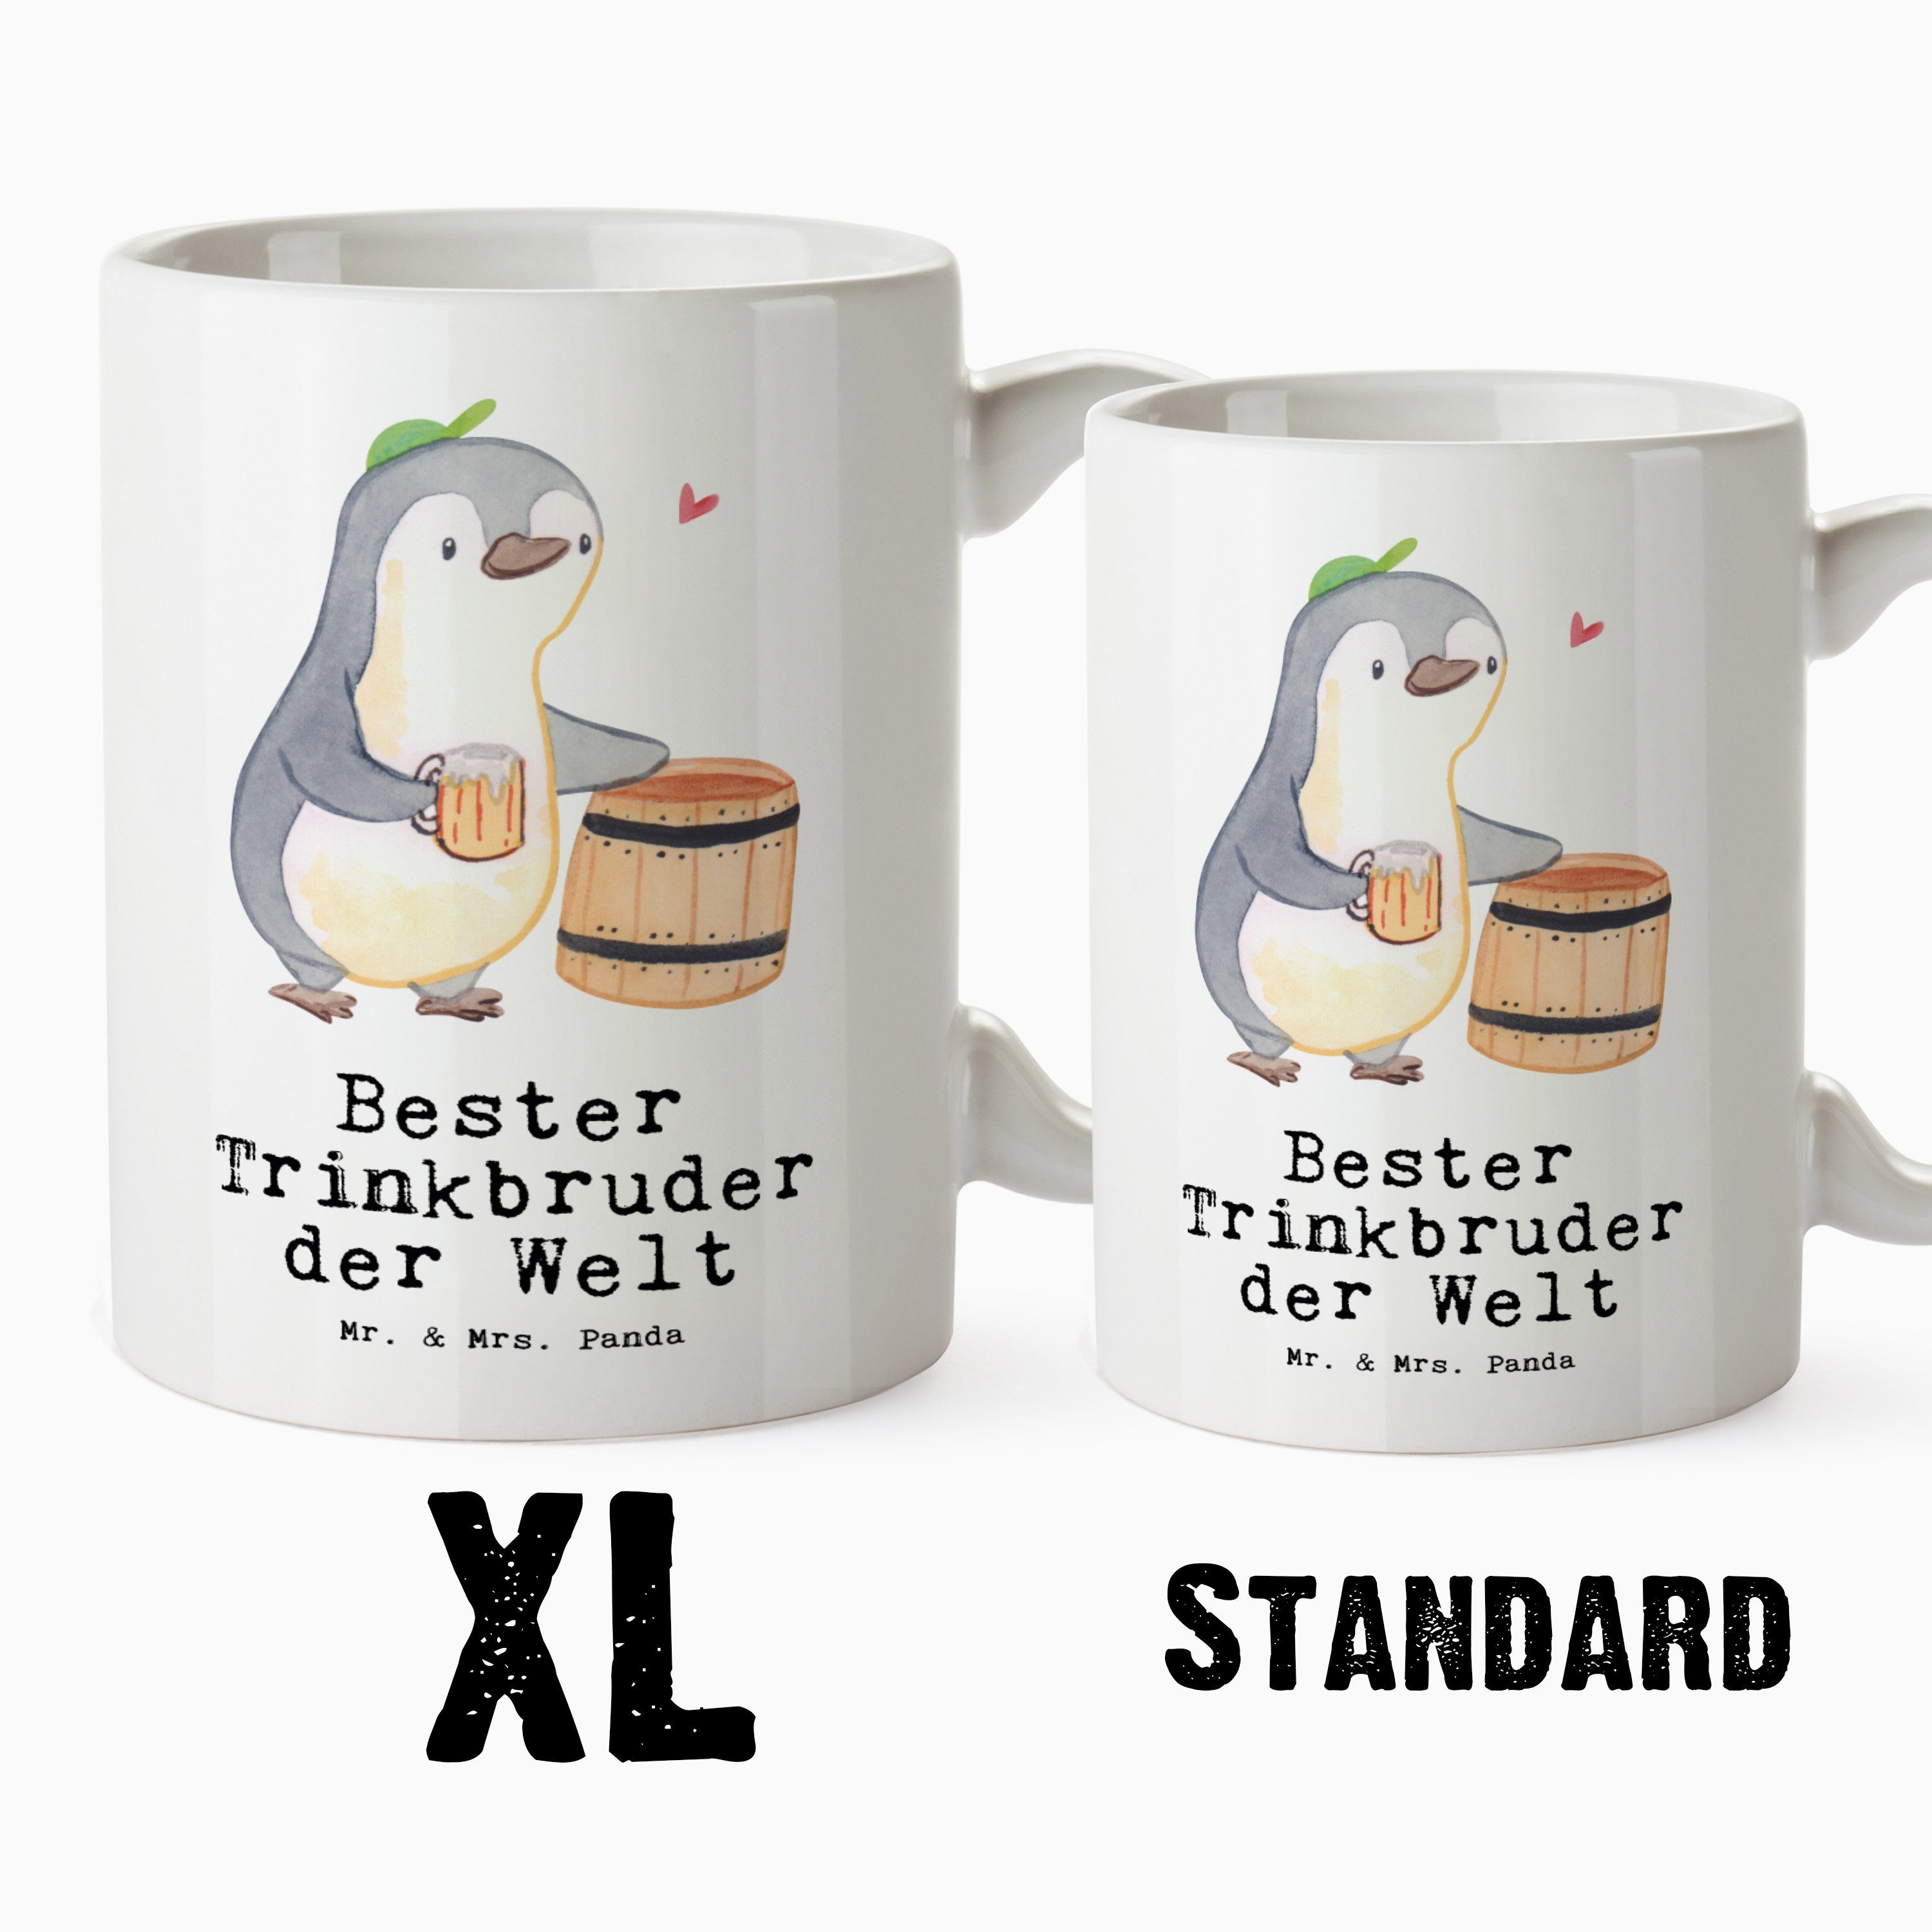 Mr. & Mrs. Panda Trinkbruder Geschenk, Welt Keramik Trinkkumpel, Weiß Pinguin der XL - Bester G, Tasse - Tasse